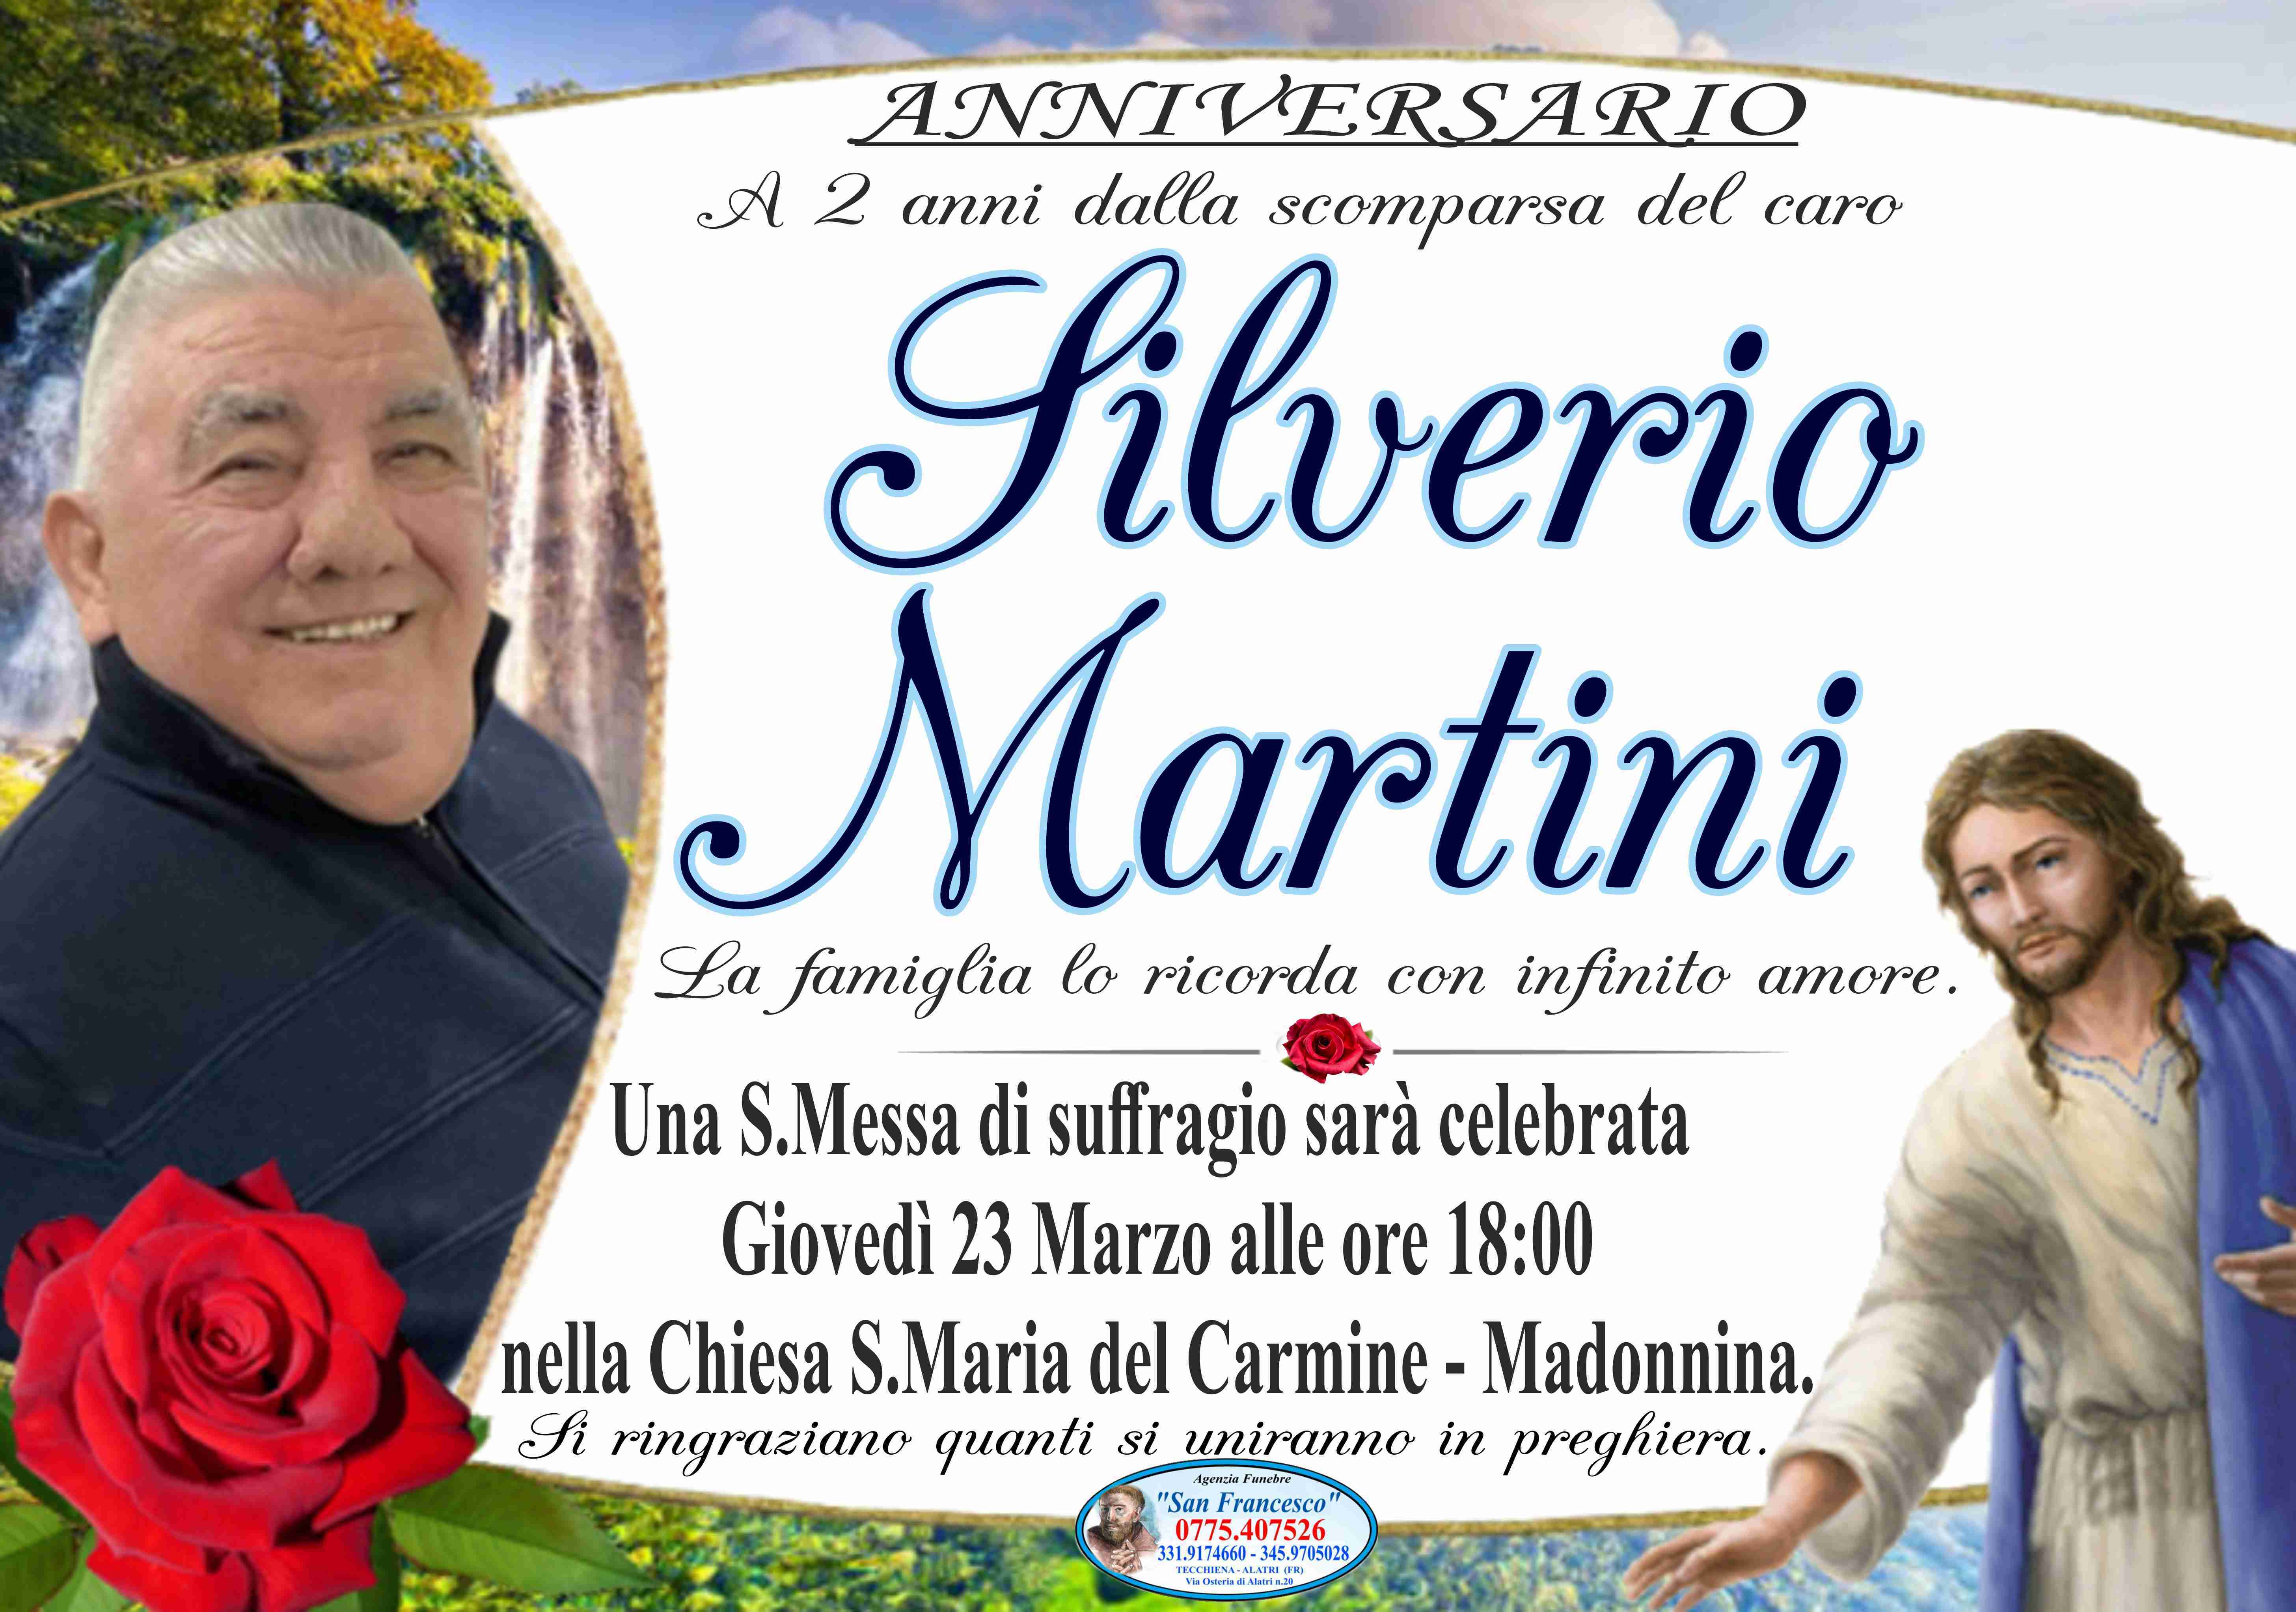 Silverio Martini